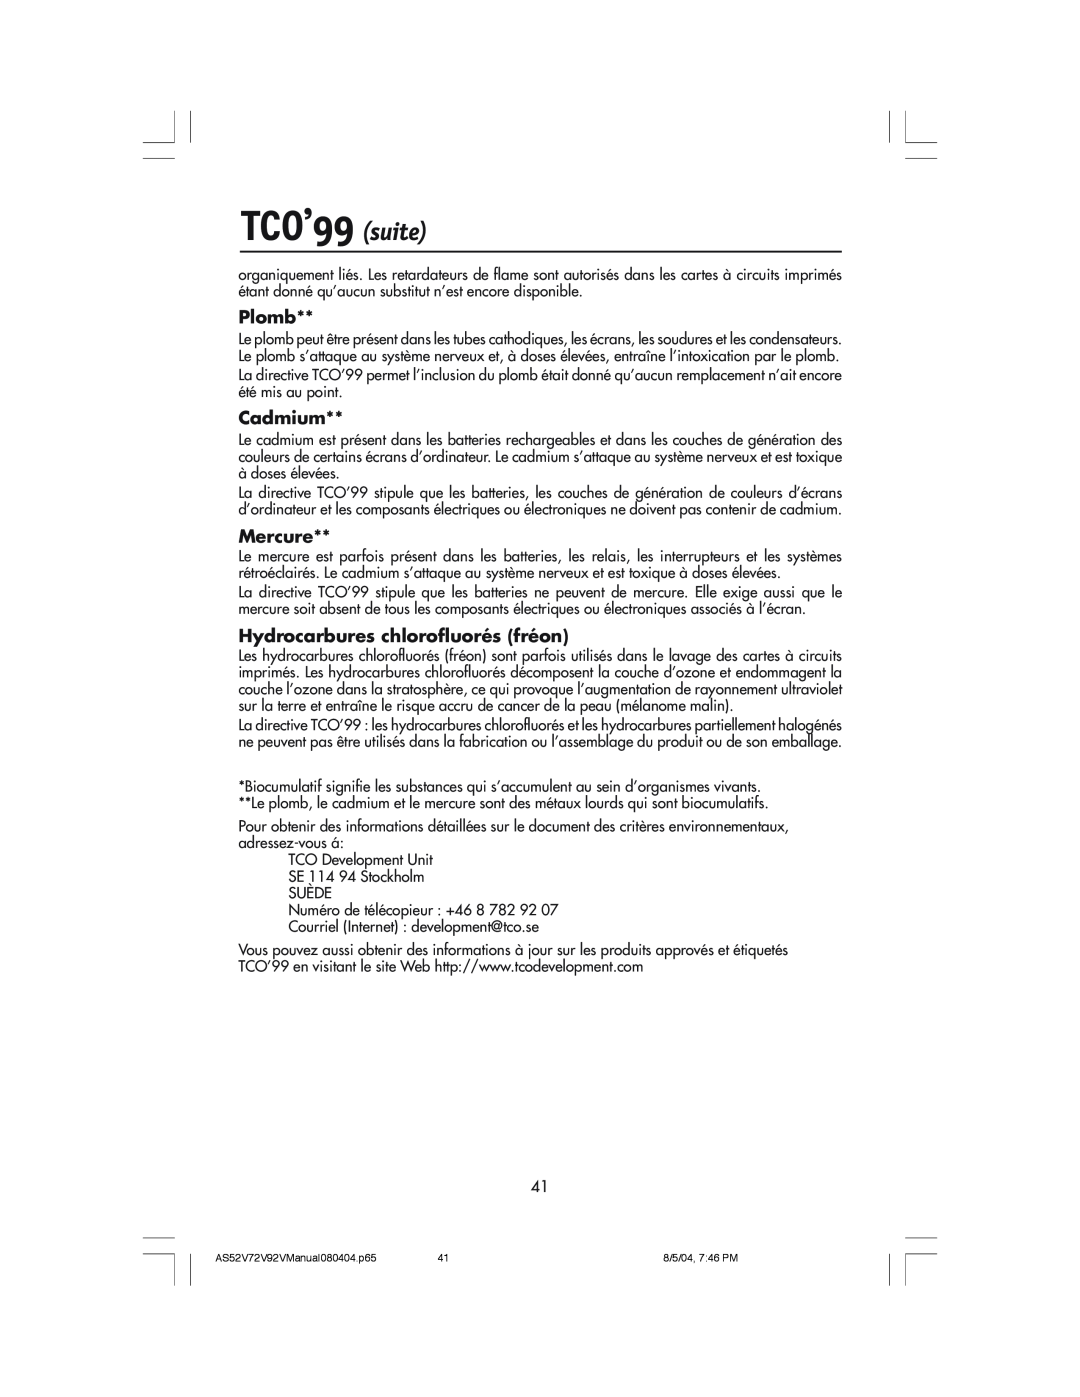 NEC LCD52V, LCD72V manual TCO’99 suite, Plomb, Cadmium, Mercure, Hydrocarbures chlorofluorés fréon 